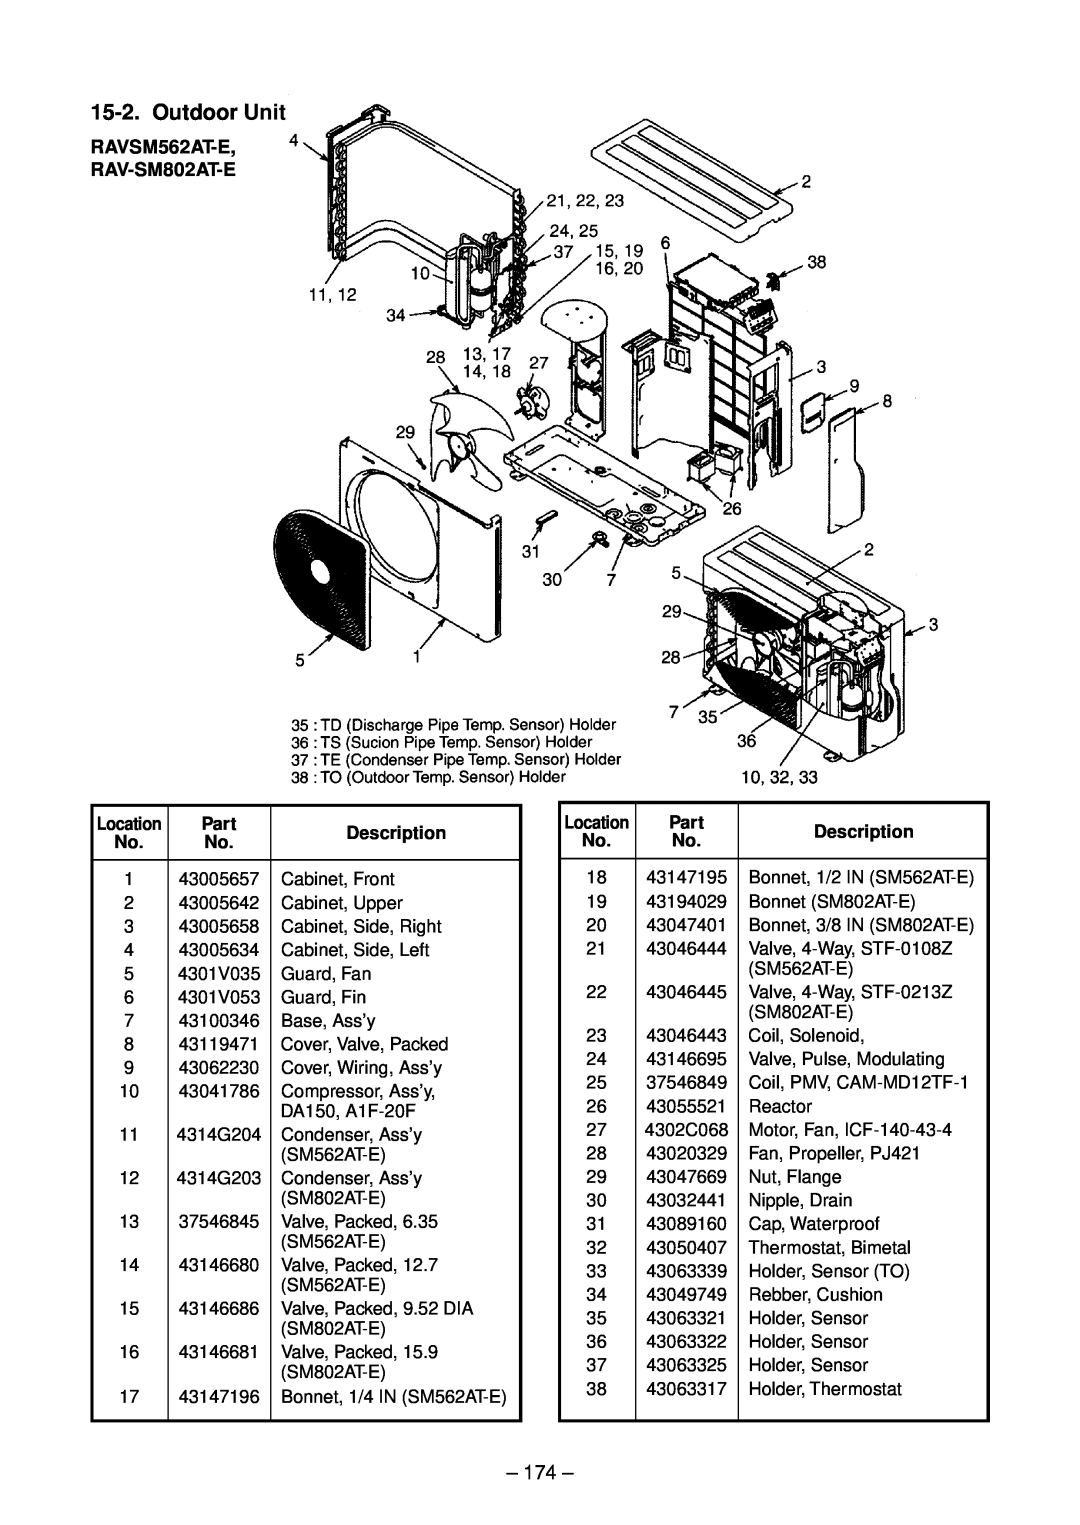 Toshiba RAV-SM802UT-E, RAV-SM1102UT-E, RAV-SM1402UT-E, RAV-SM562UT-E service manual 174, Part, Description 